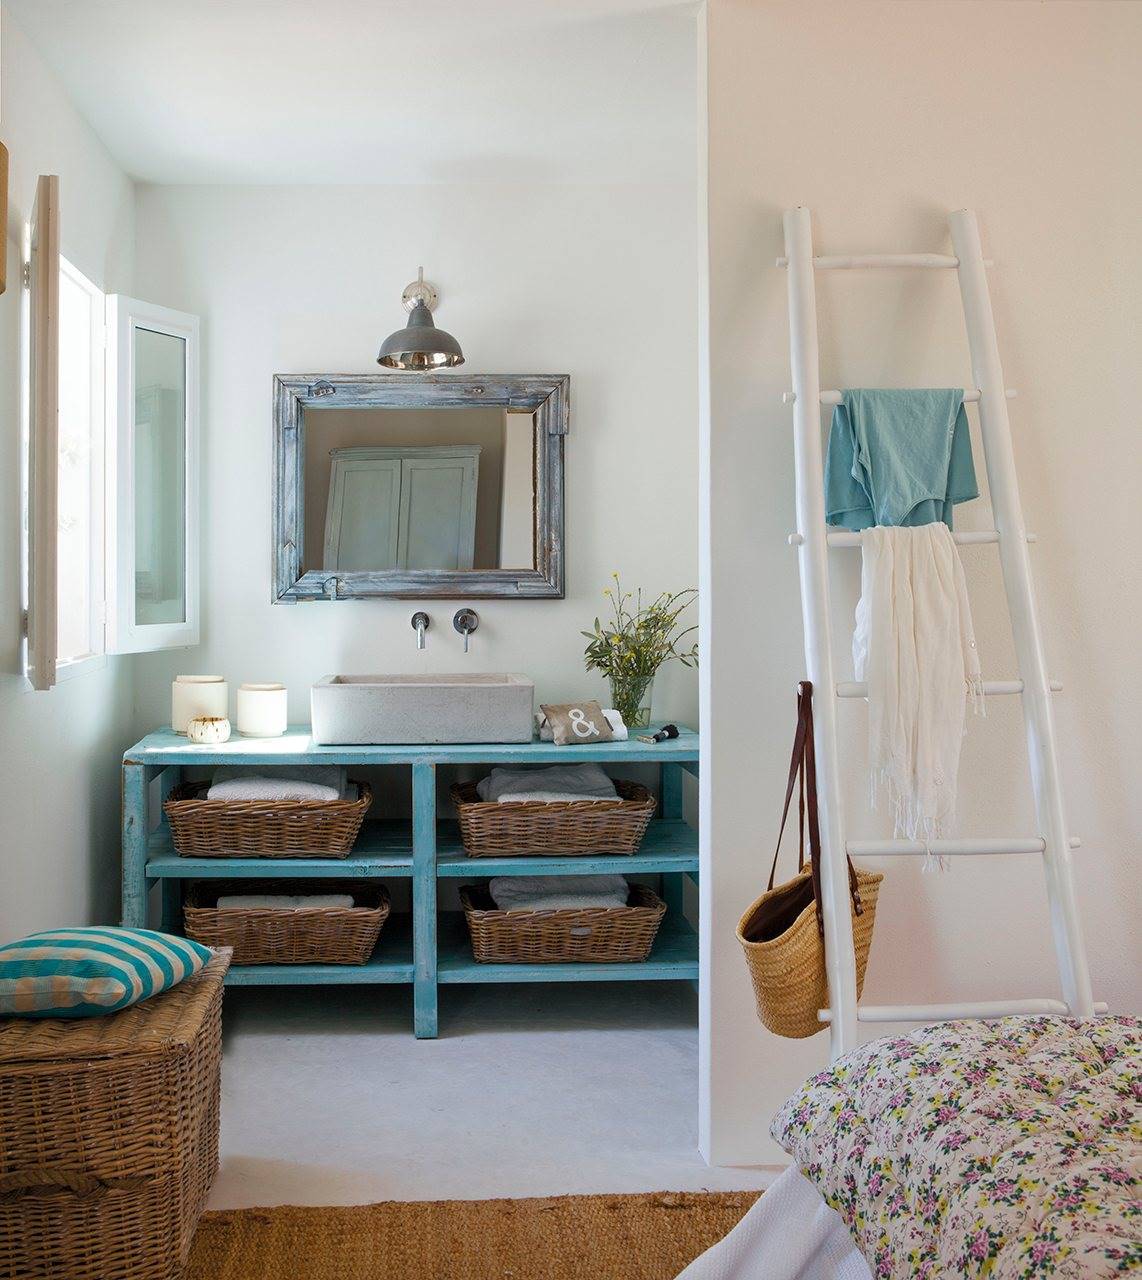 Dormitorio con escalera blanca decorativa y baño integrado con mueble pintado de azul 1142x1280